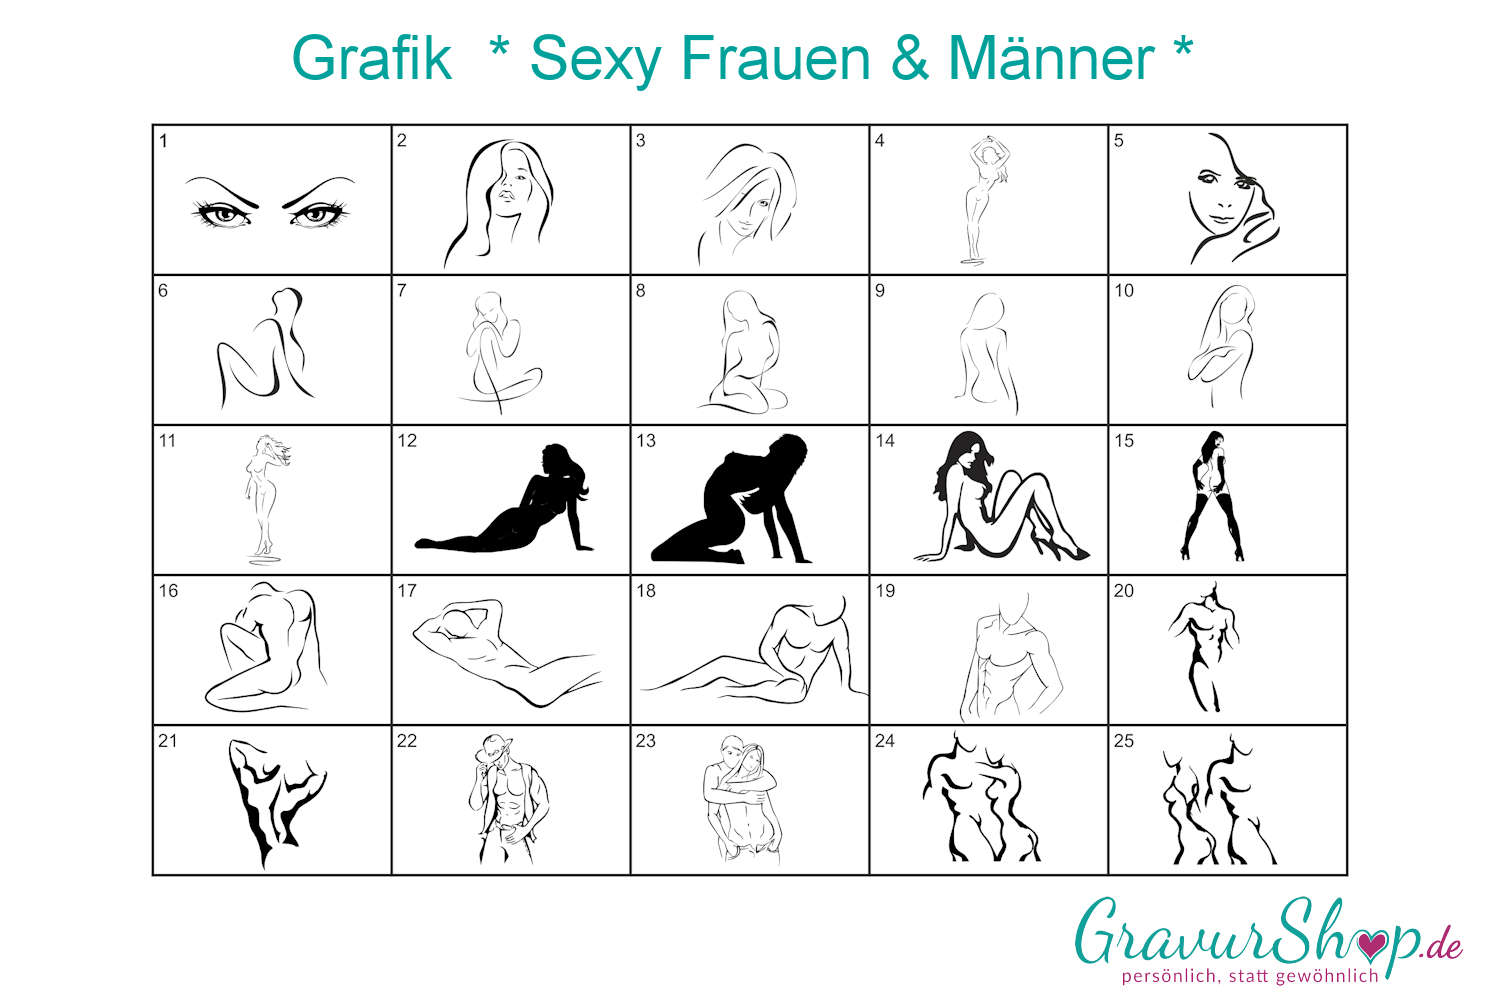 Grafik - Sexy Frauen & MÃ¤nner.